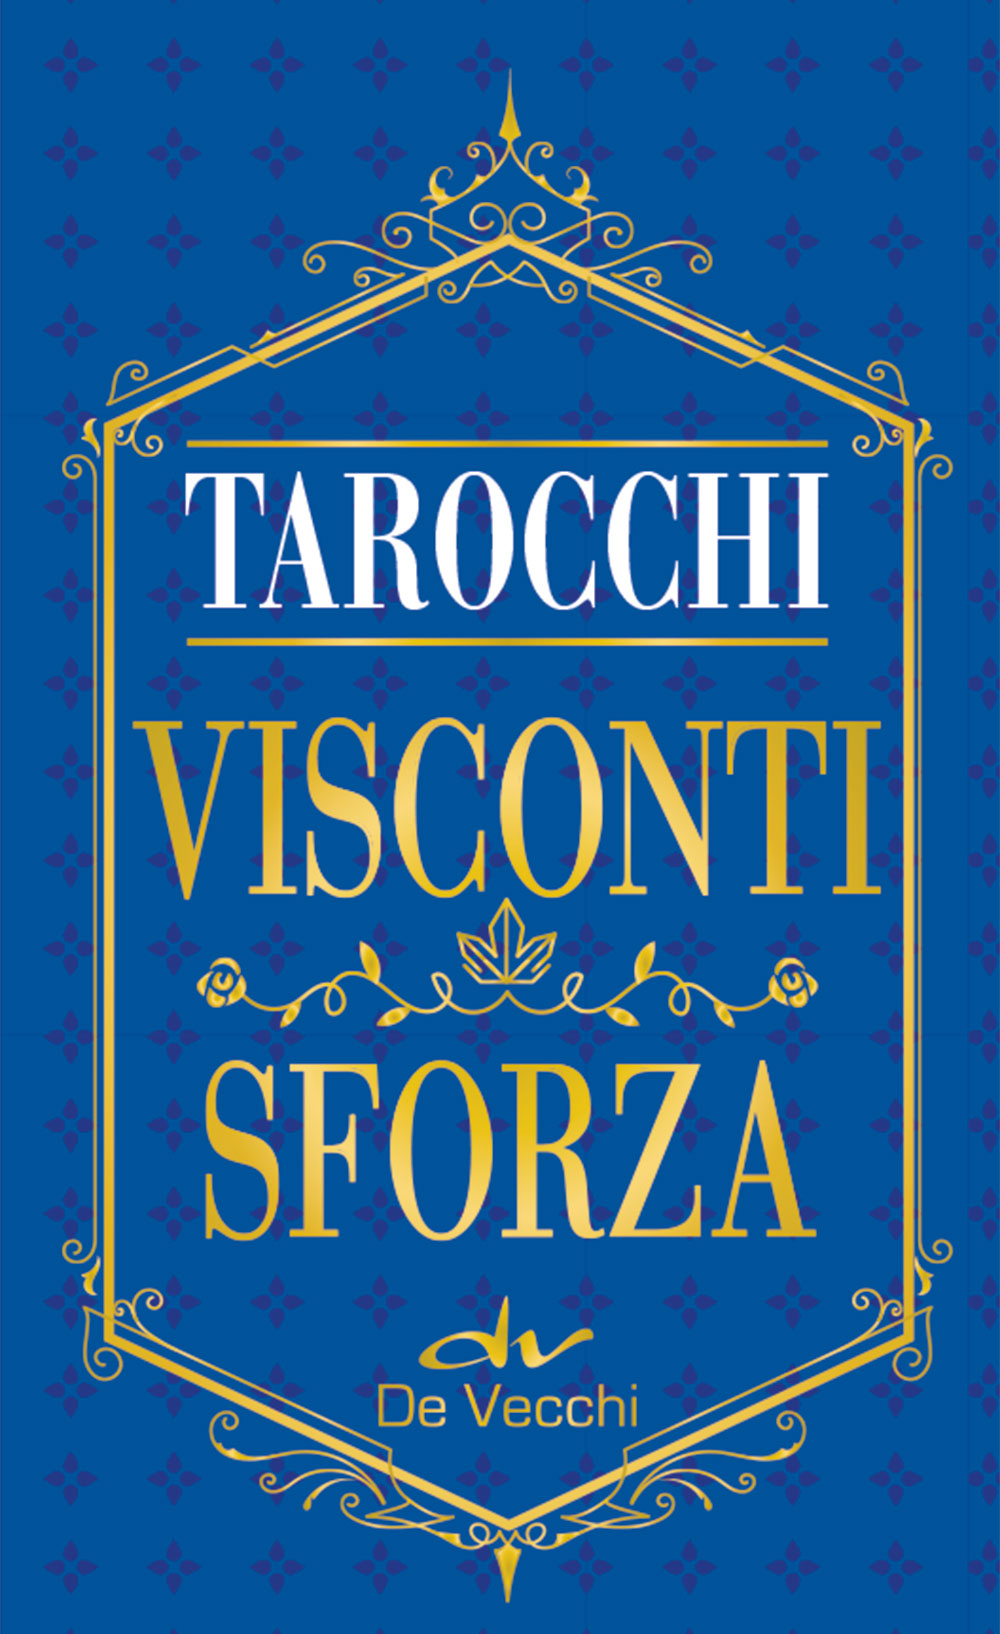 I tarocchi Visconti Sforza mini